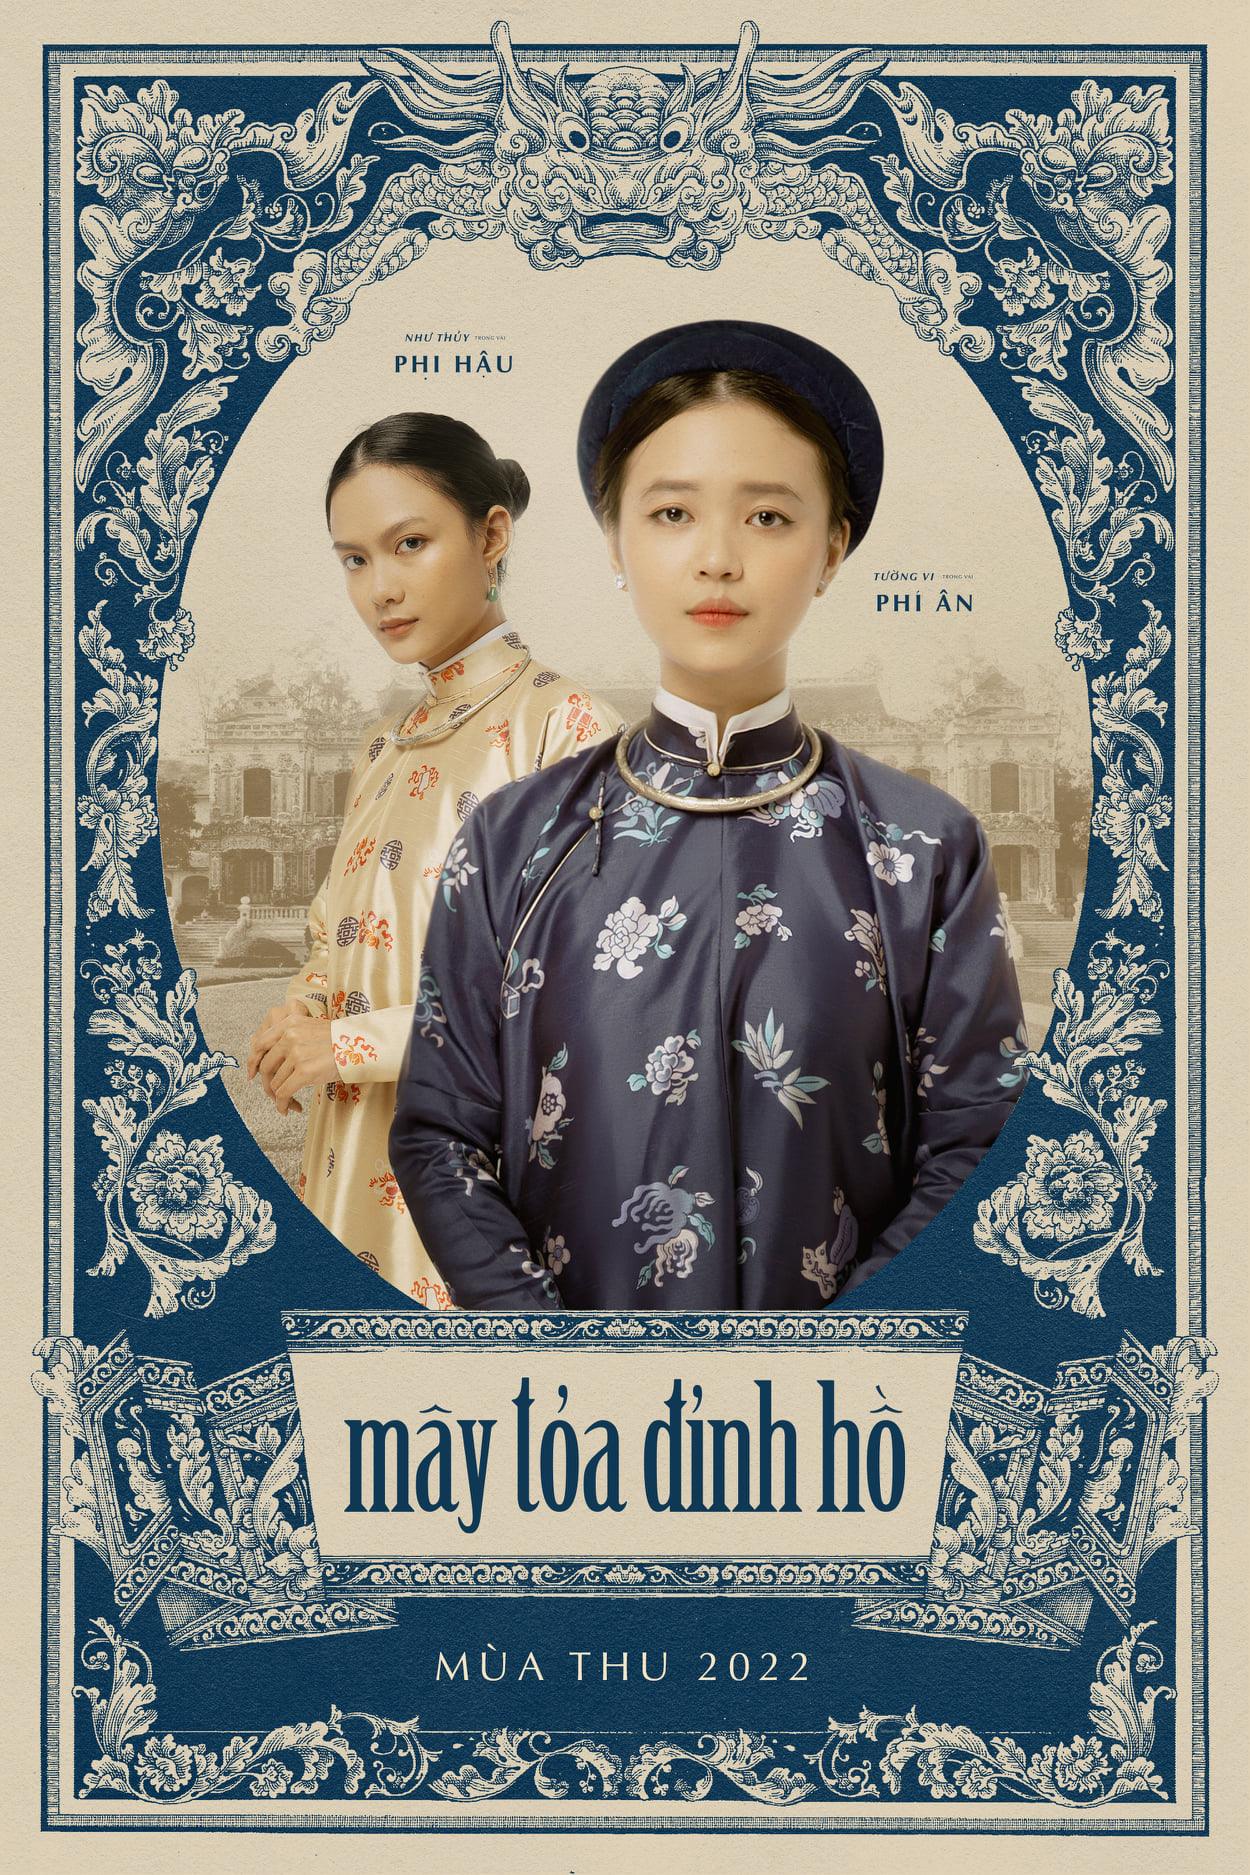 Xôn xao phim cổ trang về phi tần mắc bệnh tâm thần có thật 100% của sử Việt, poster nữ chính giống nguyên mẫu đến nổi da gà! - Ảnh 4.